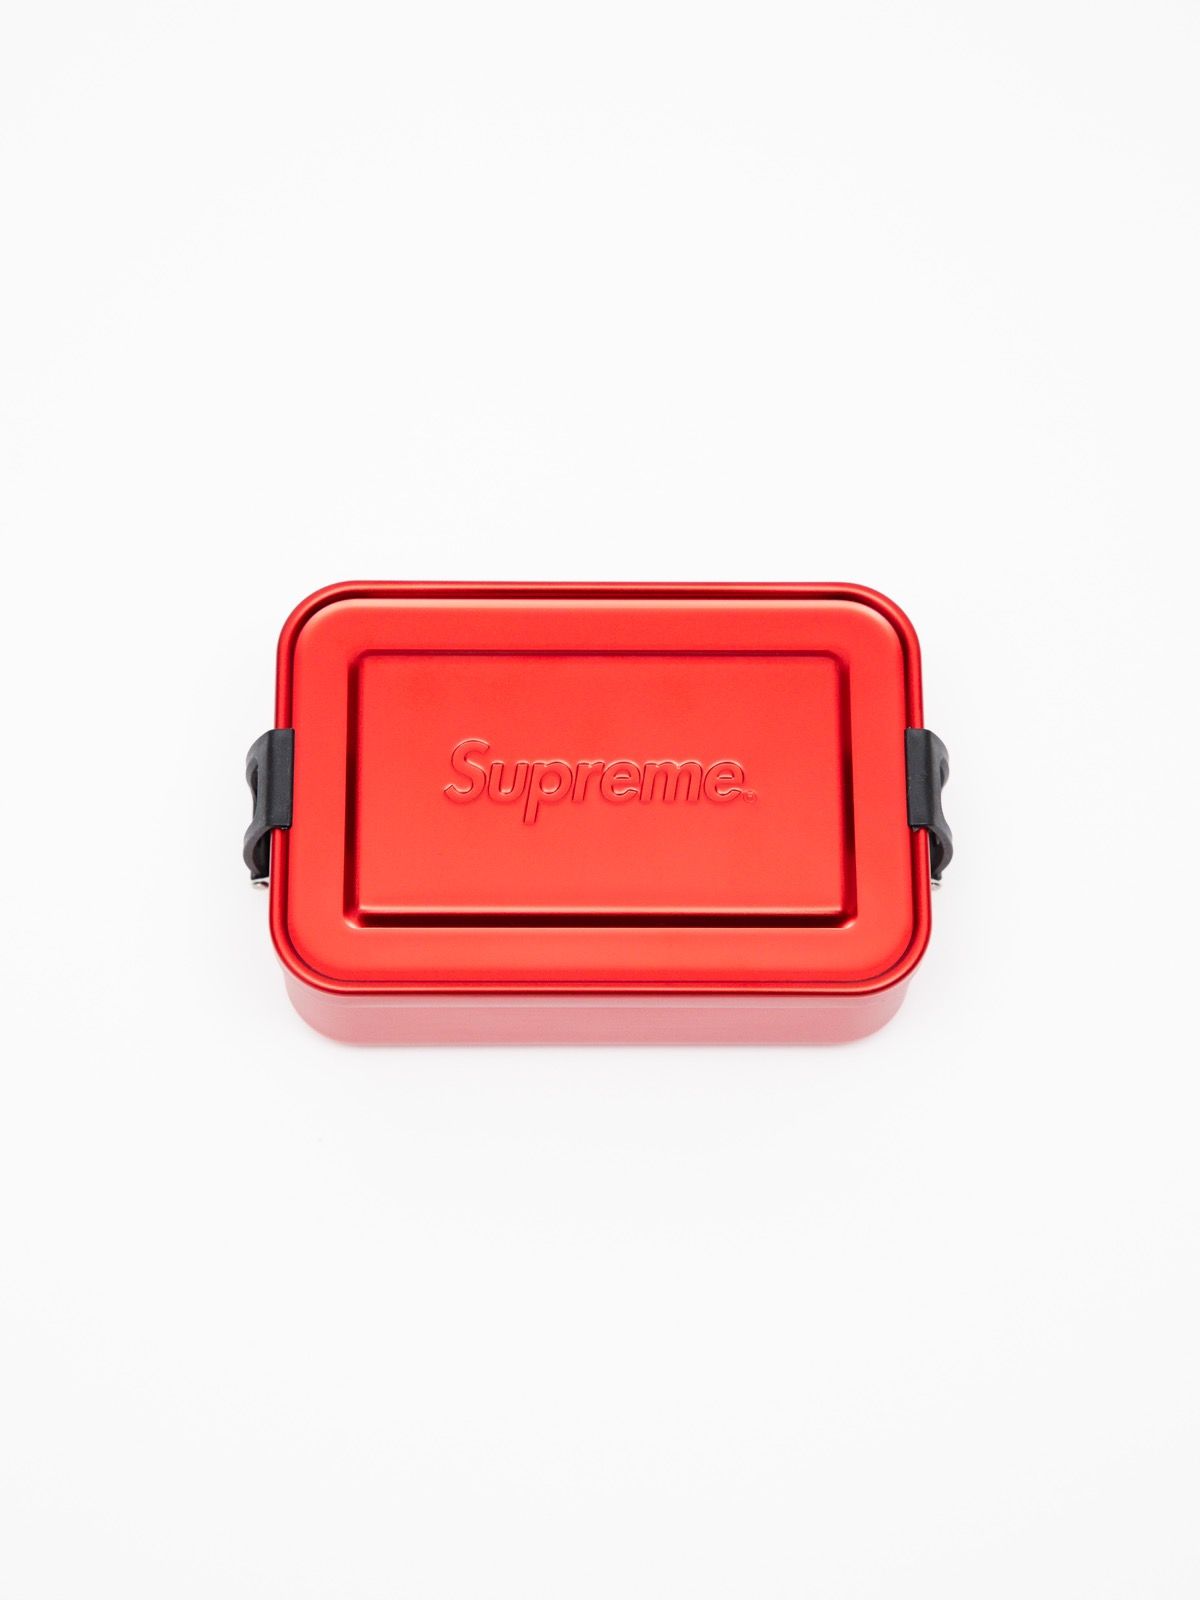 Supreme Supreme SIGG Small Metal Box | Grailed